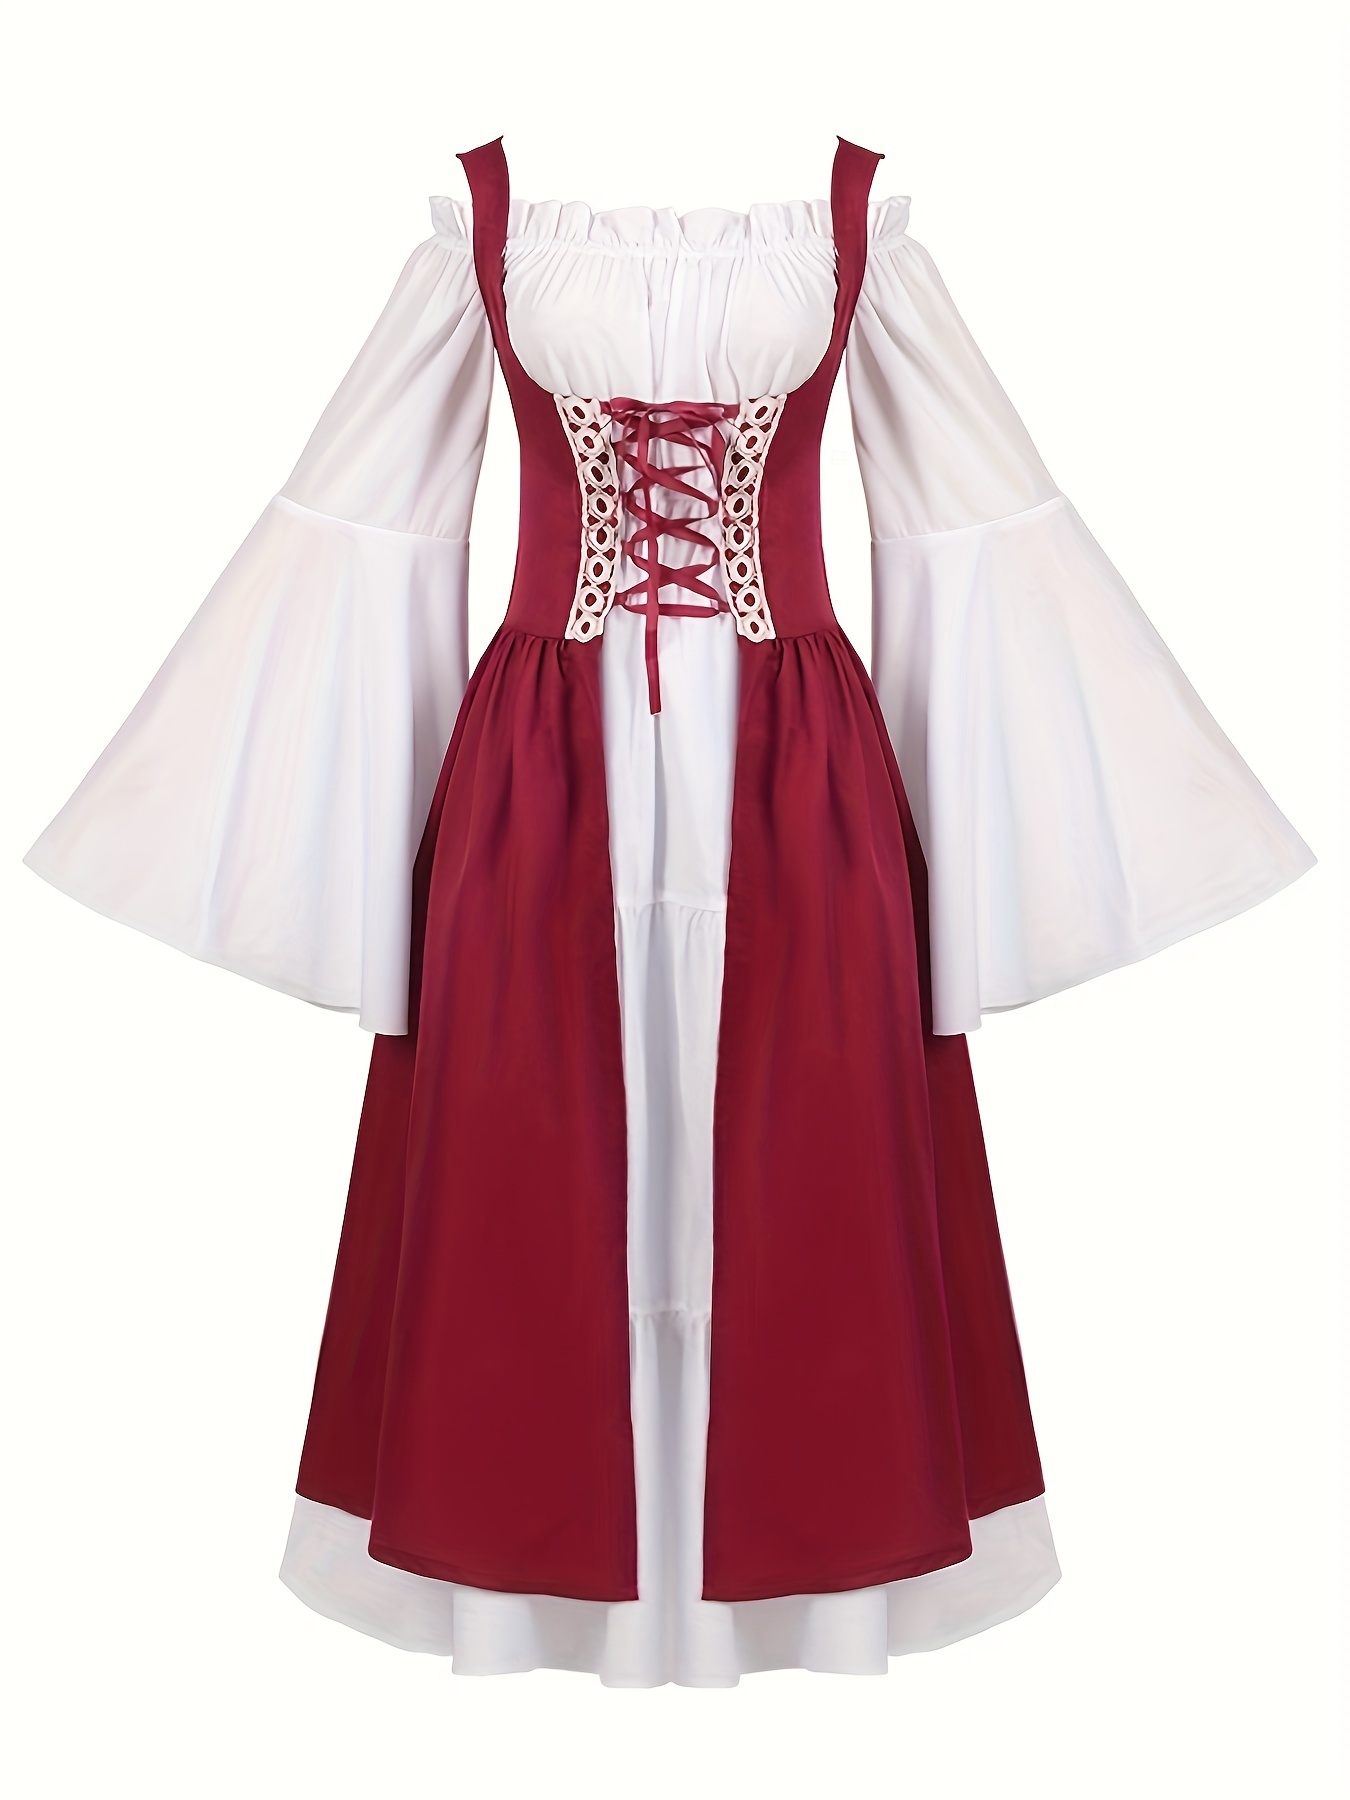 Disfraz de capa medieval larga para mujer – vestido rojo de vino del  Renacimiento Victoriano Cosplay retro vestido con capucha capa